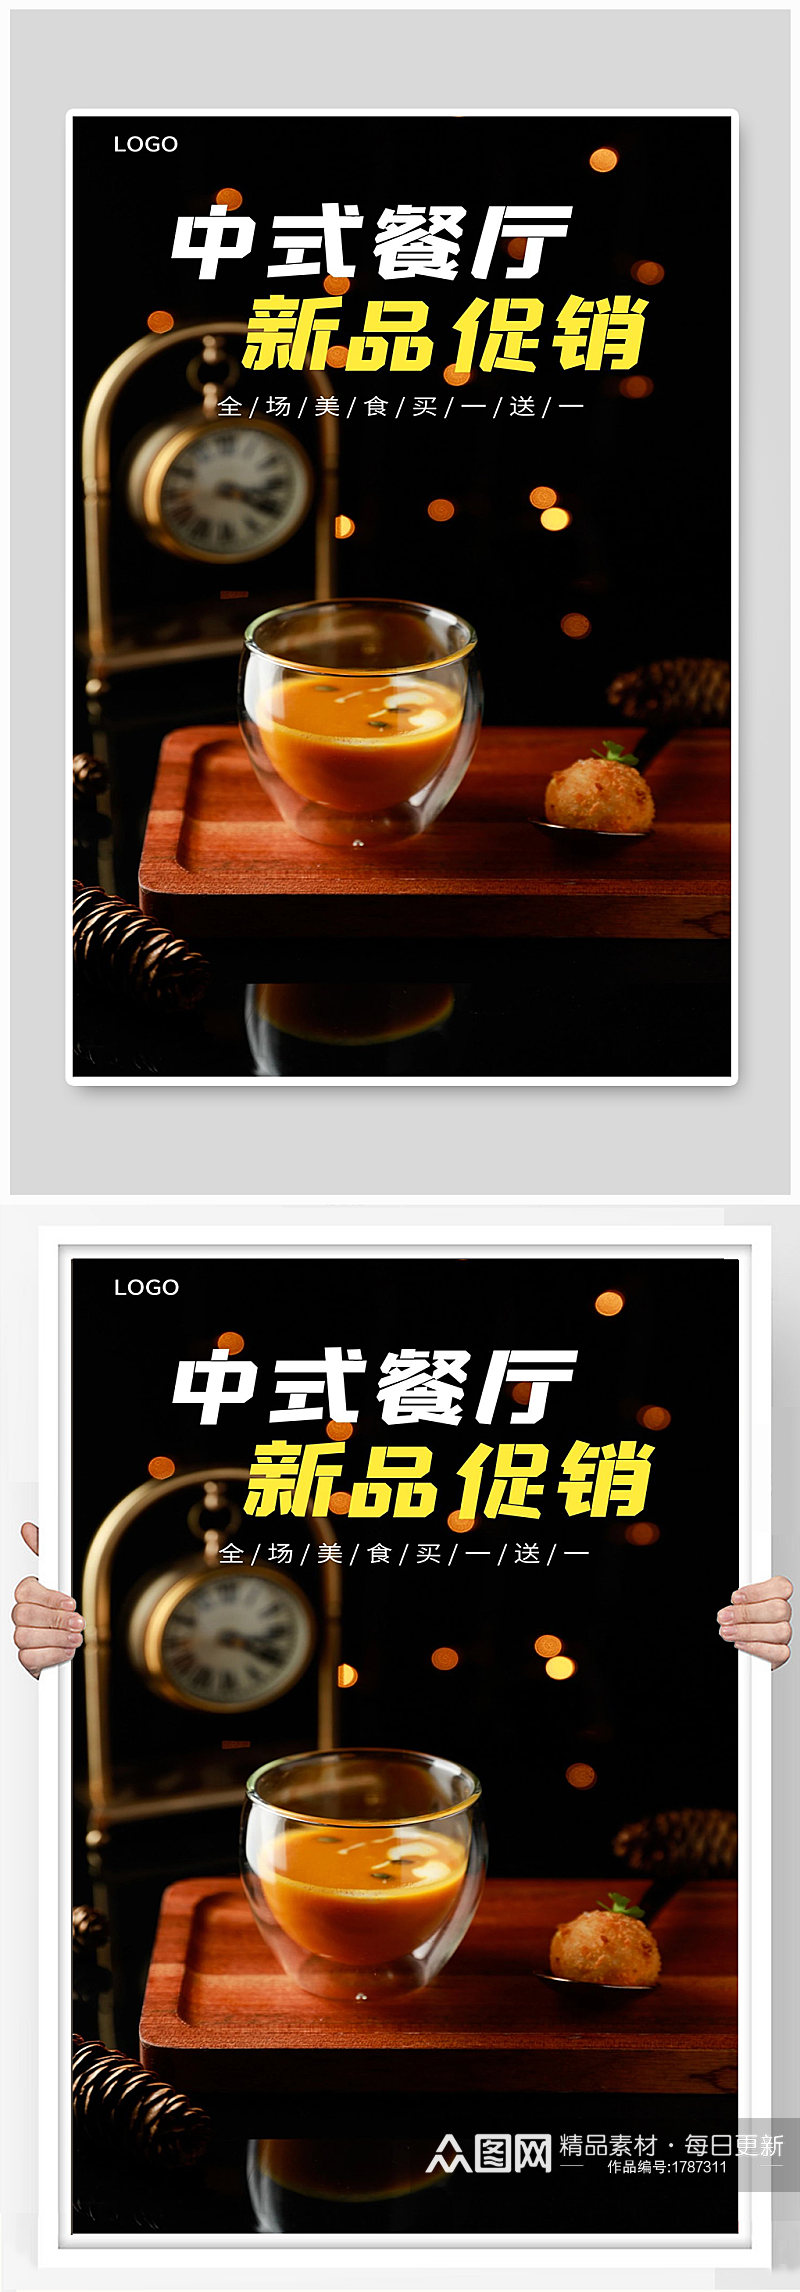 中式餐厅新品促销宣传海报设计素材